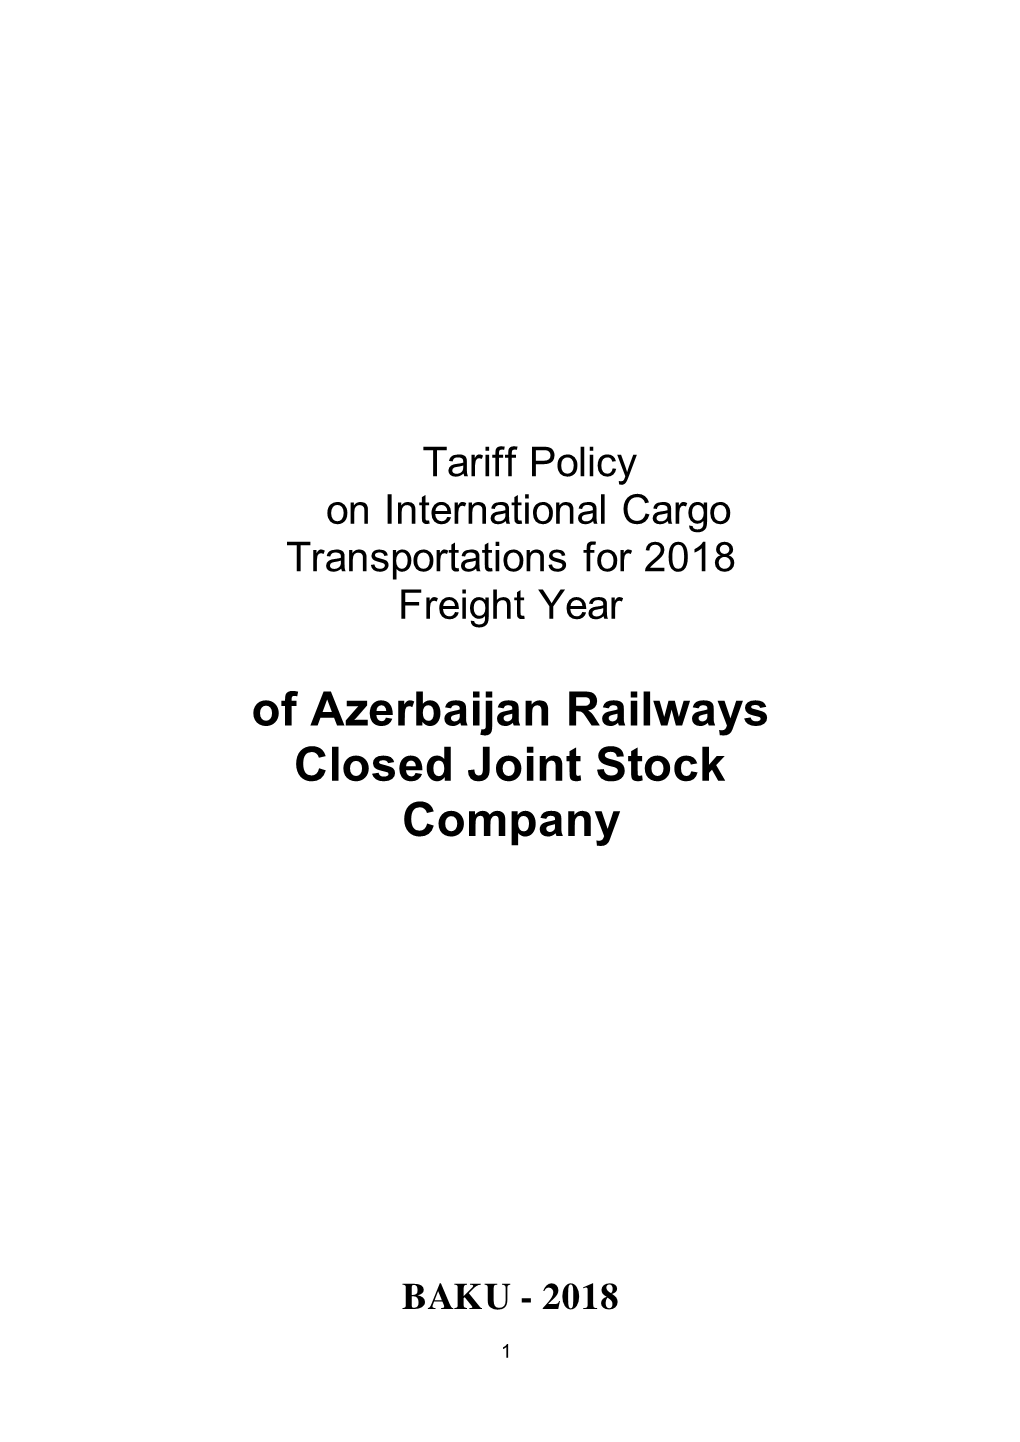 Of Azerbaijan Railways Closed Joint Stock Company